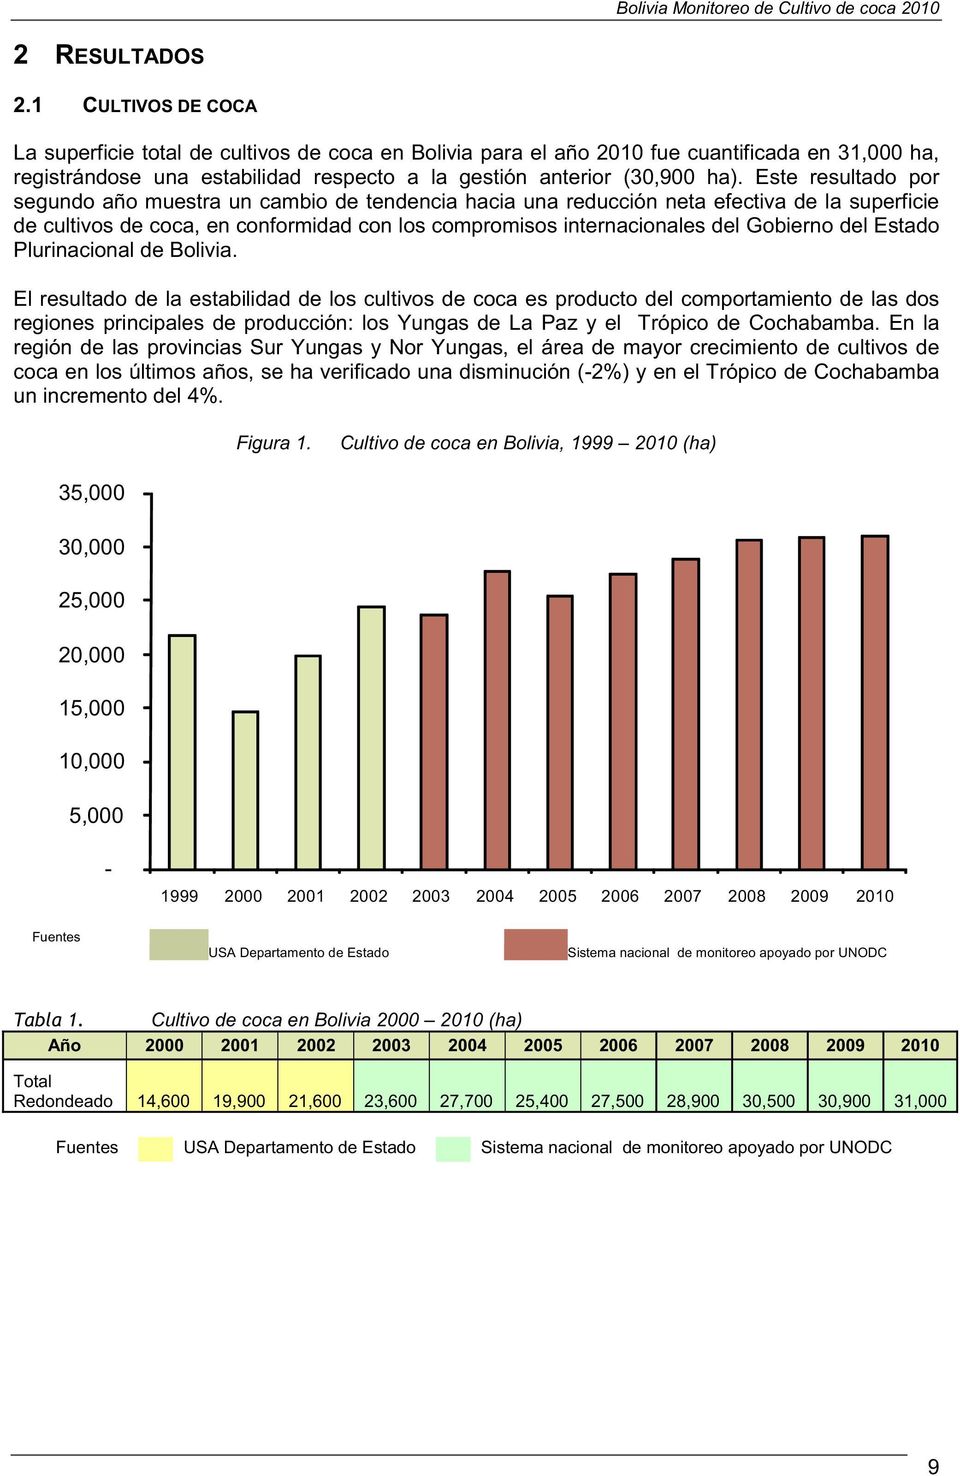 Este resultado por segundo año muestra un cambio de tendencia hacia una reducción neta efectiva de la superficie de cultivos de coca, en conformidad con los compromisos internacionales del Gobierno